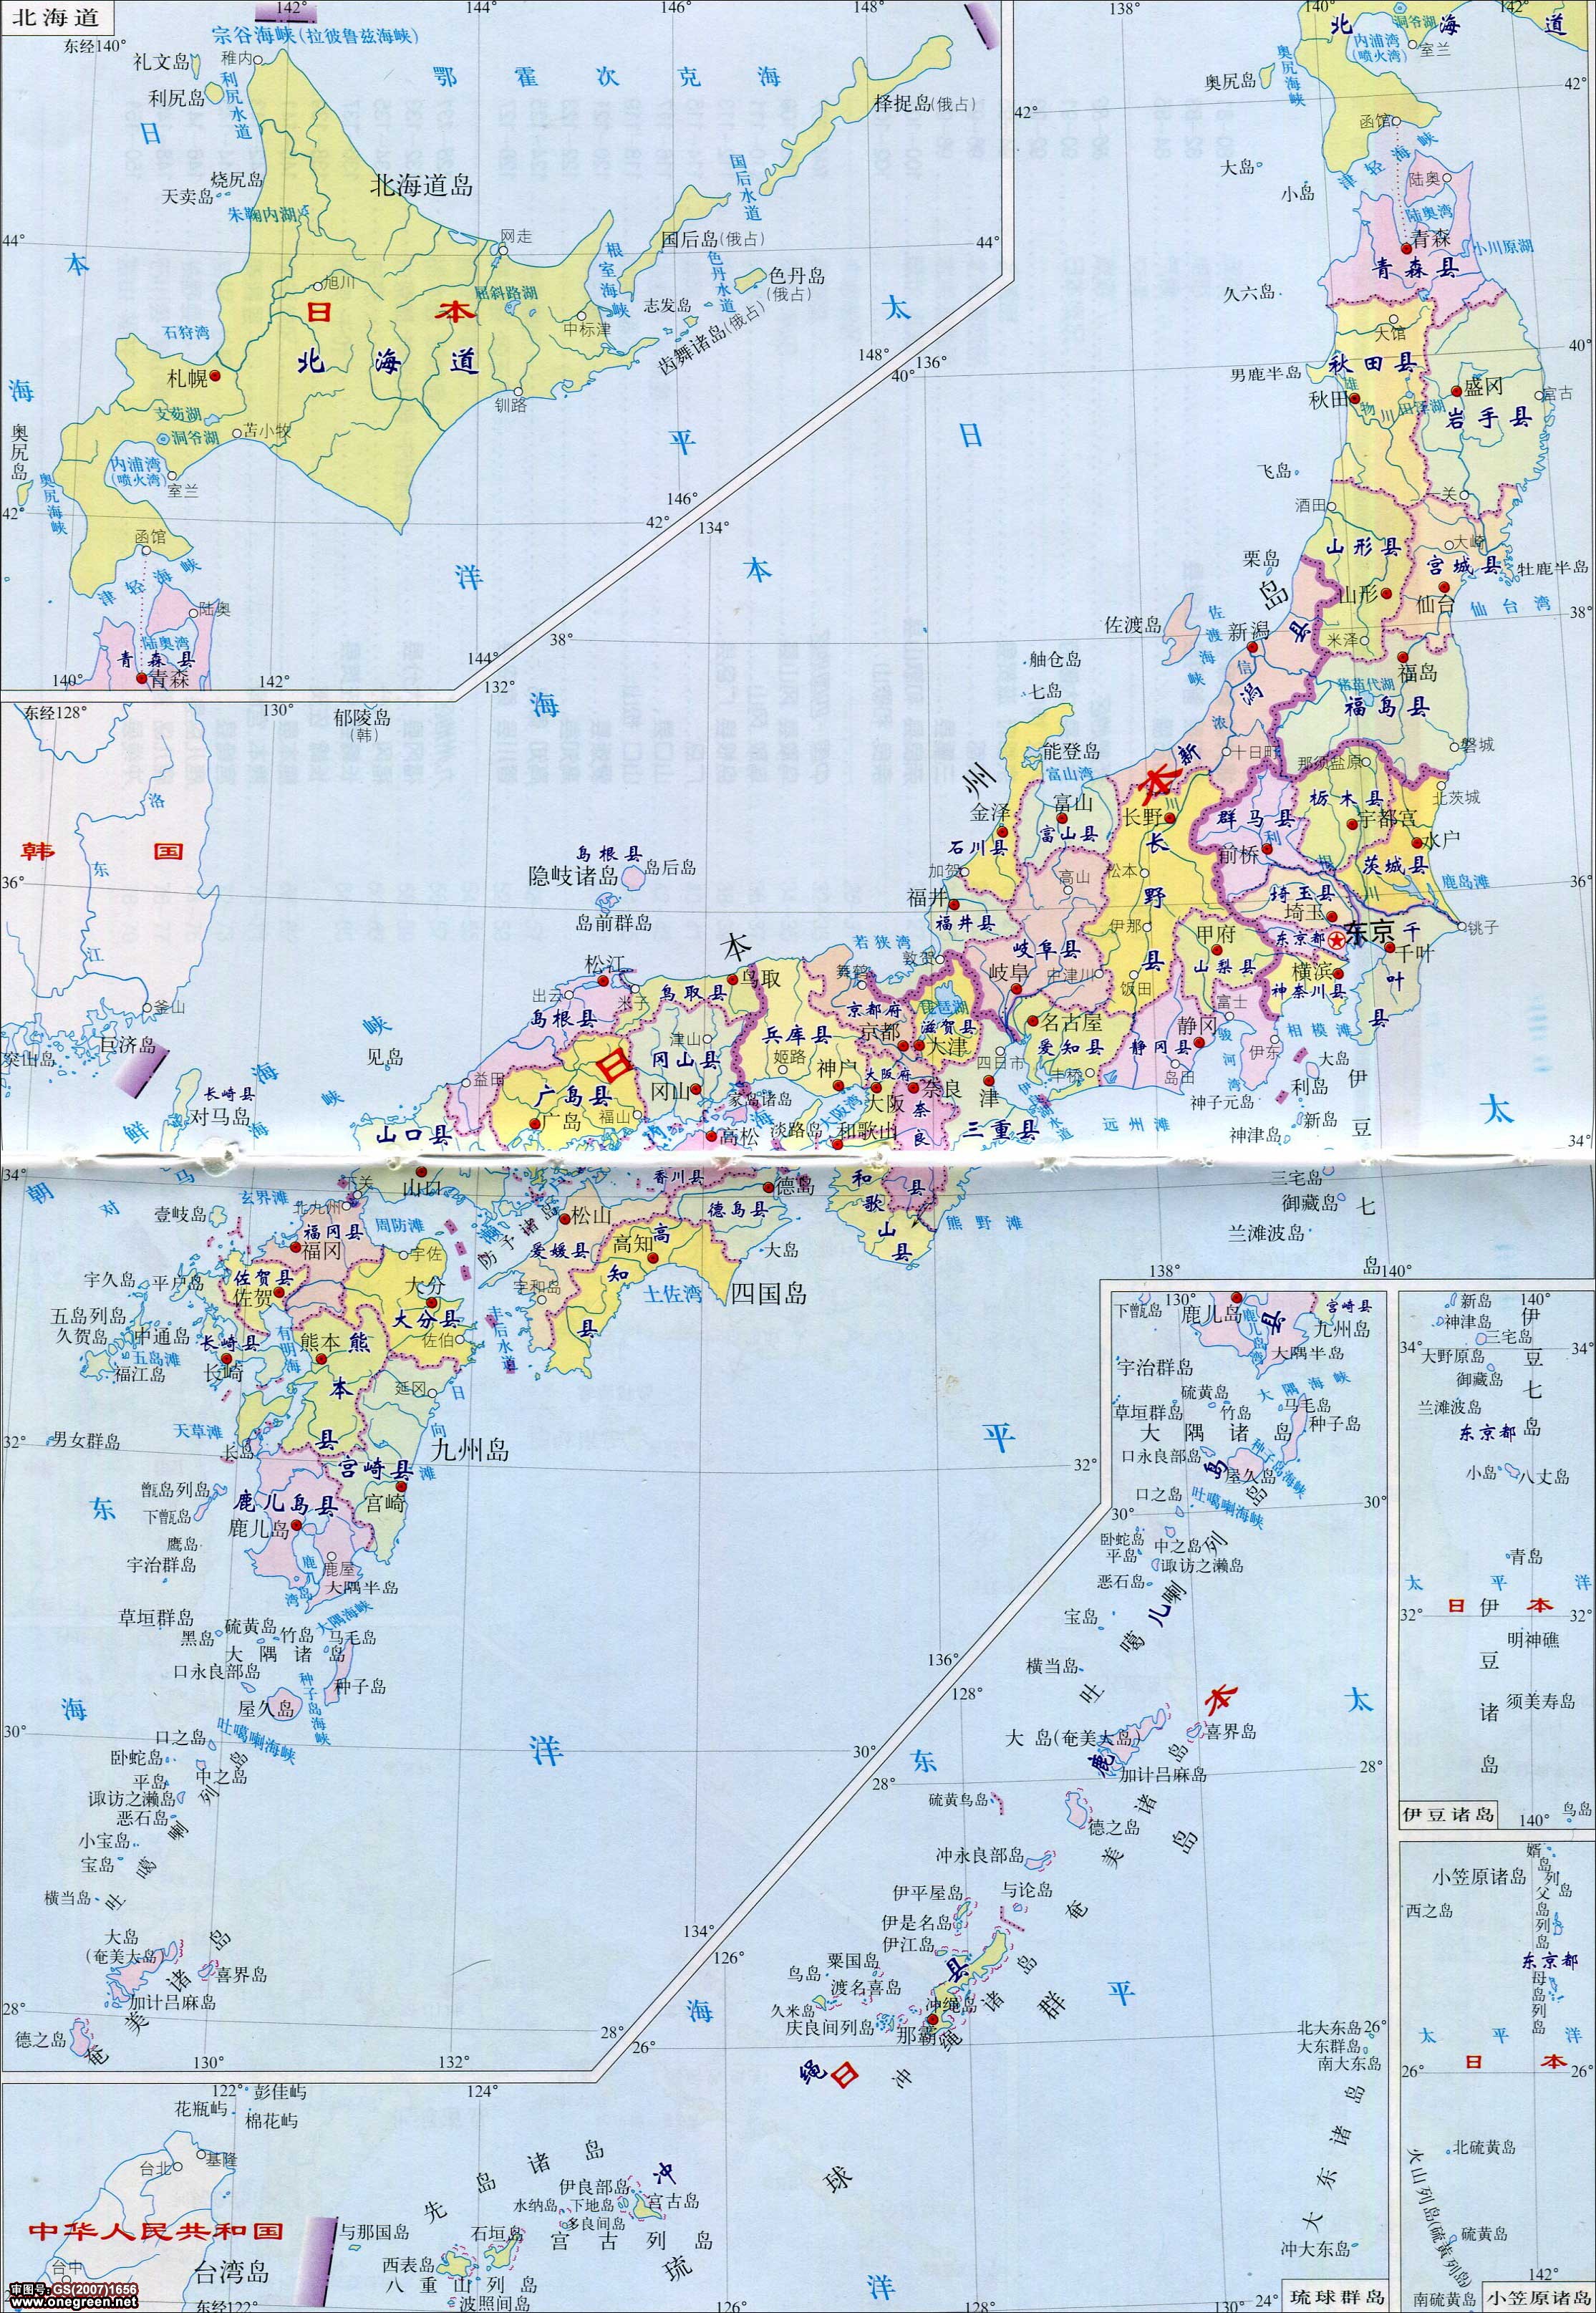 日本的日文课本和中文课本的截图 - 知乎